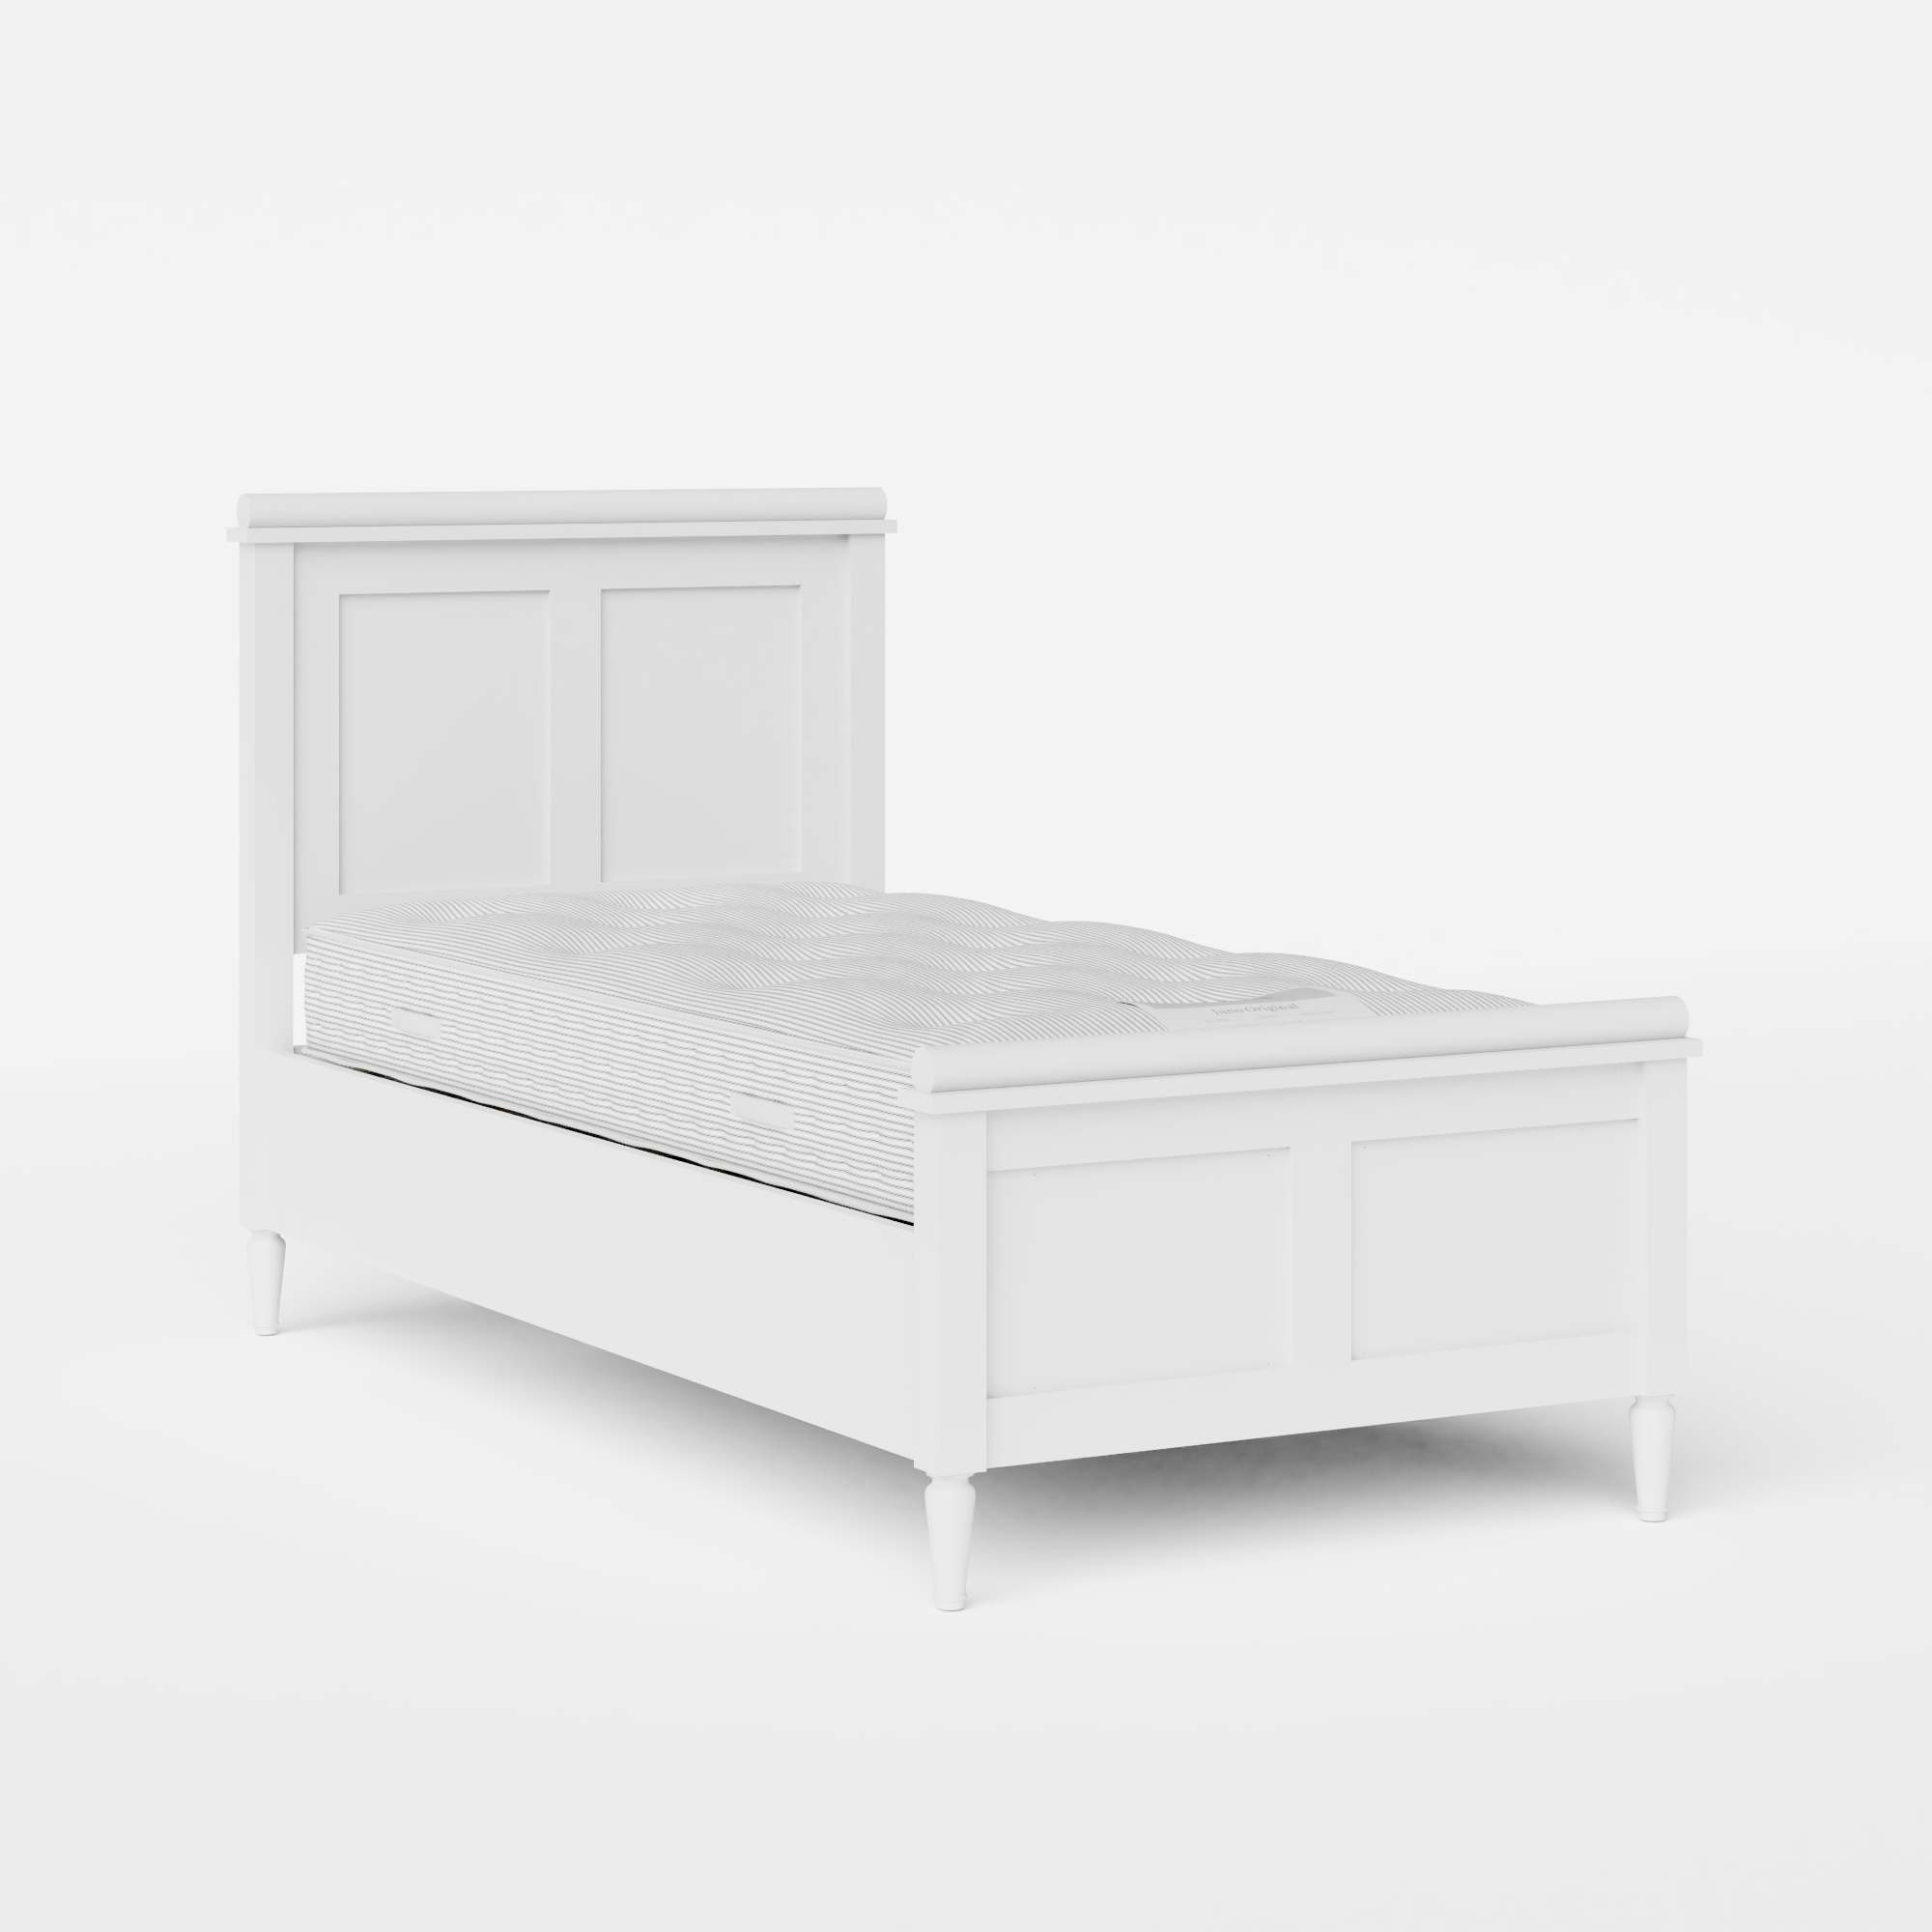 Nocturne Painted cama individual de madera pintada en blanco con colchón